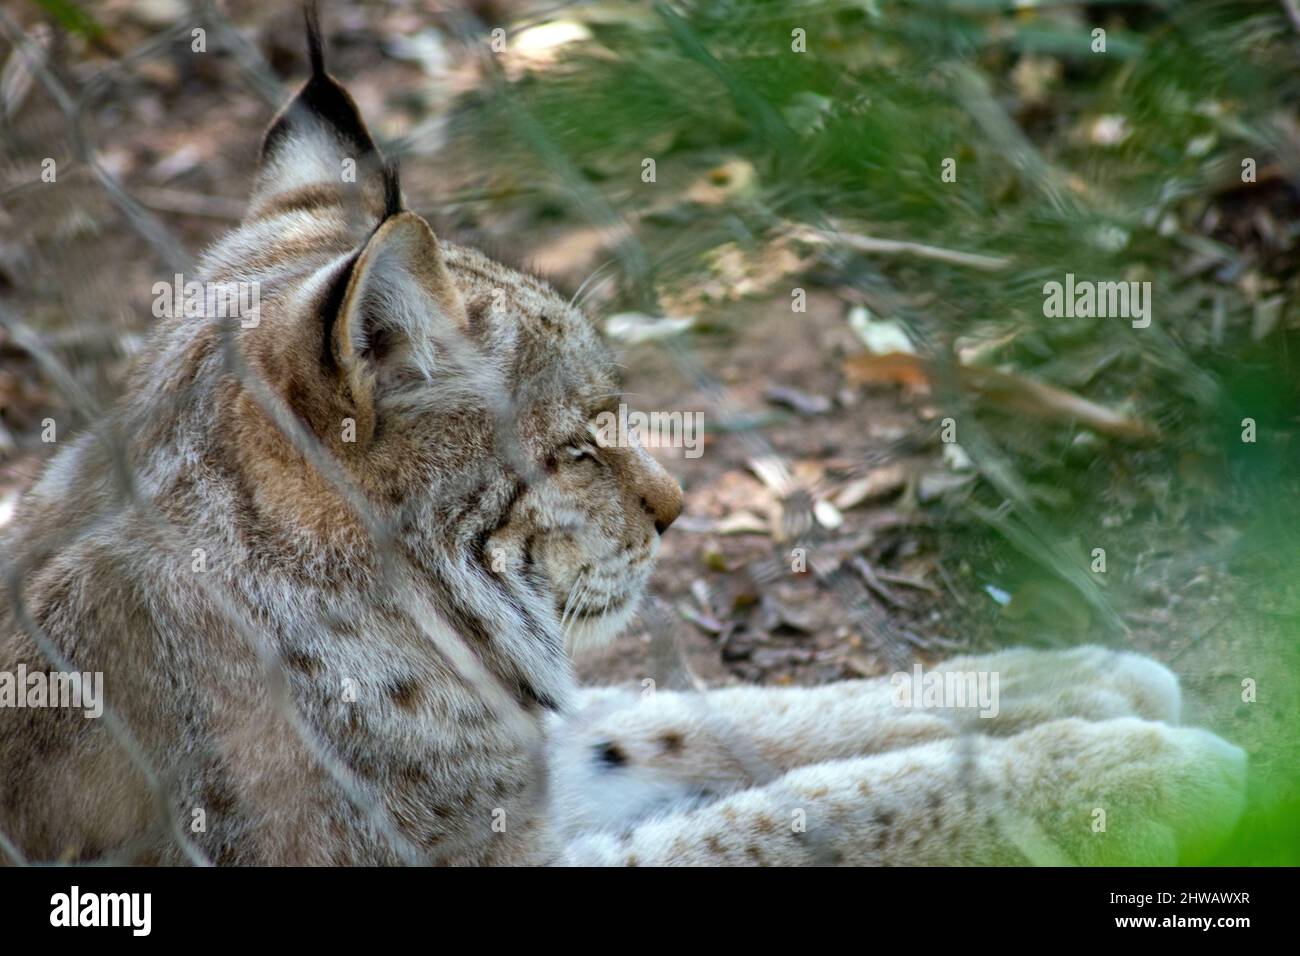 La lynx eurasiatica (Lynx lynx) è un gatto selvatico di medie dimensioni ampiamente distribuito dall'Europa settentrionale, centrale e orientale all'Asia centrale e alla Siberia. Foto Stock